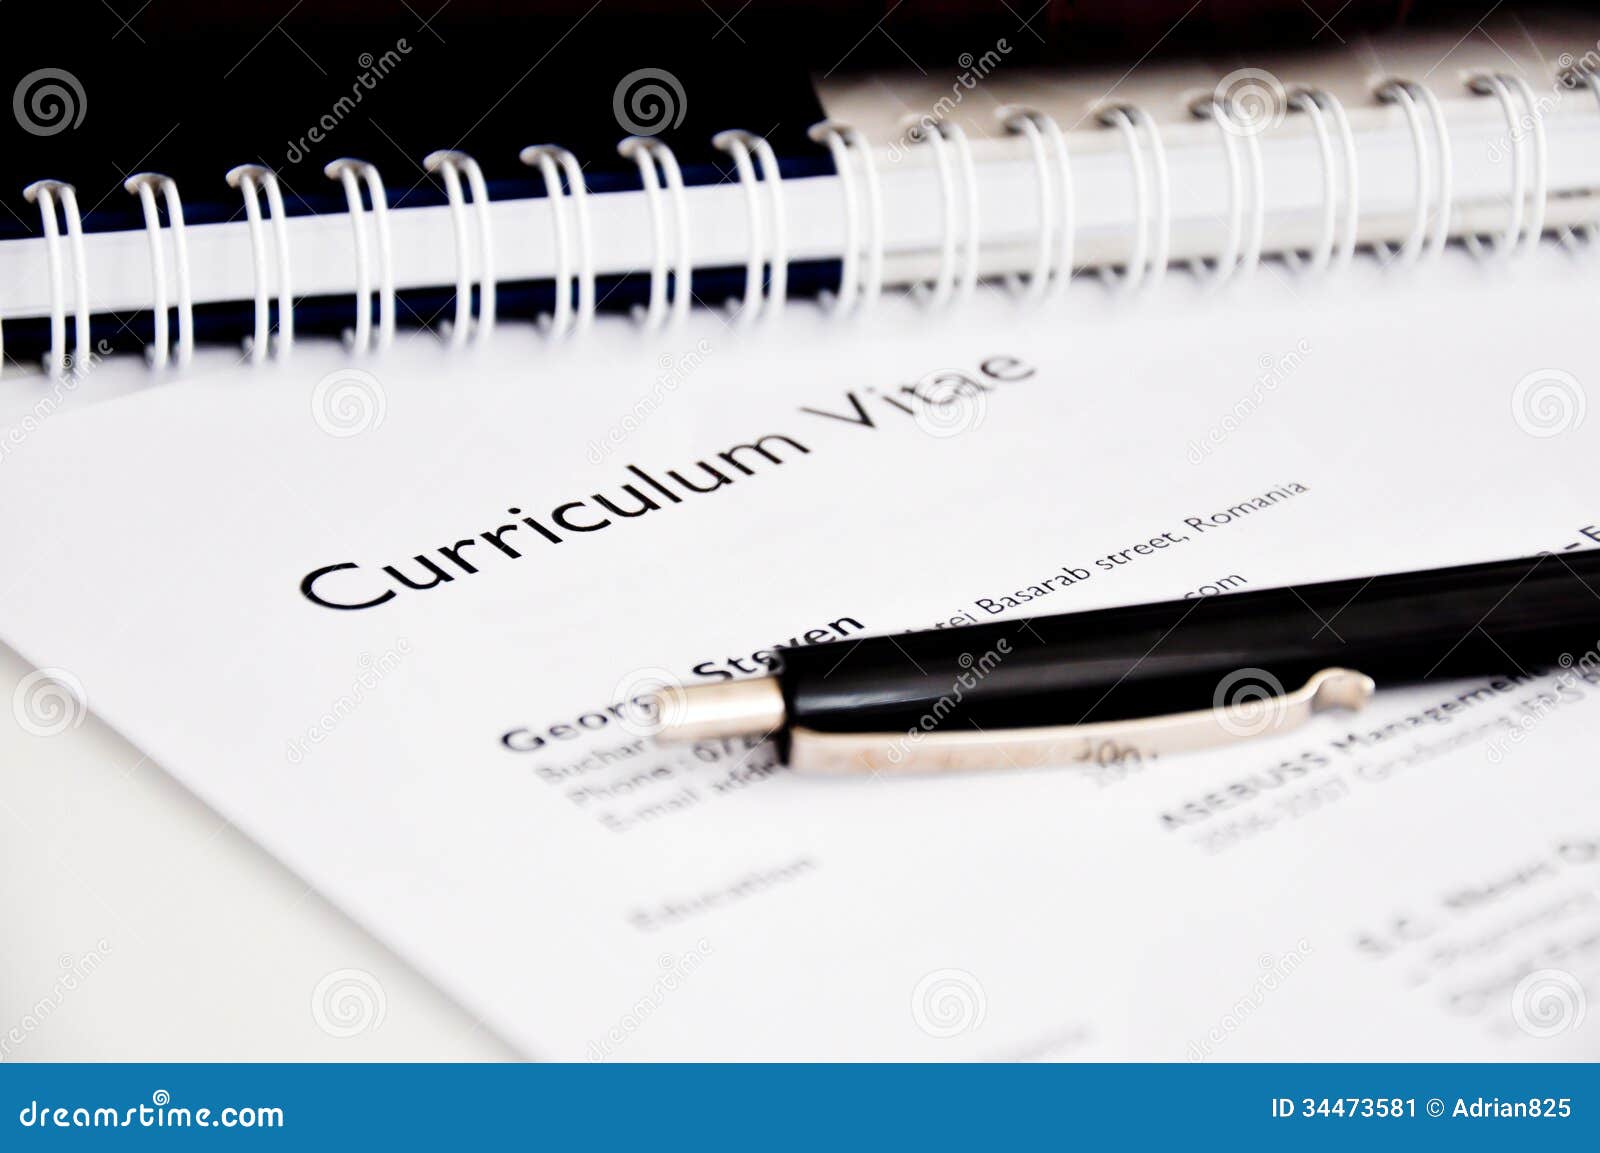 curriculum vitae or resume